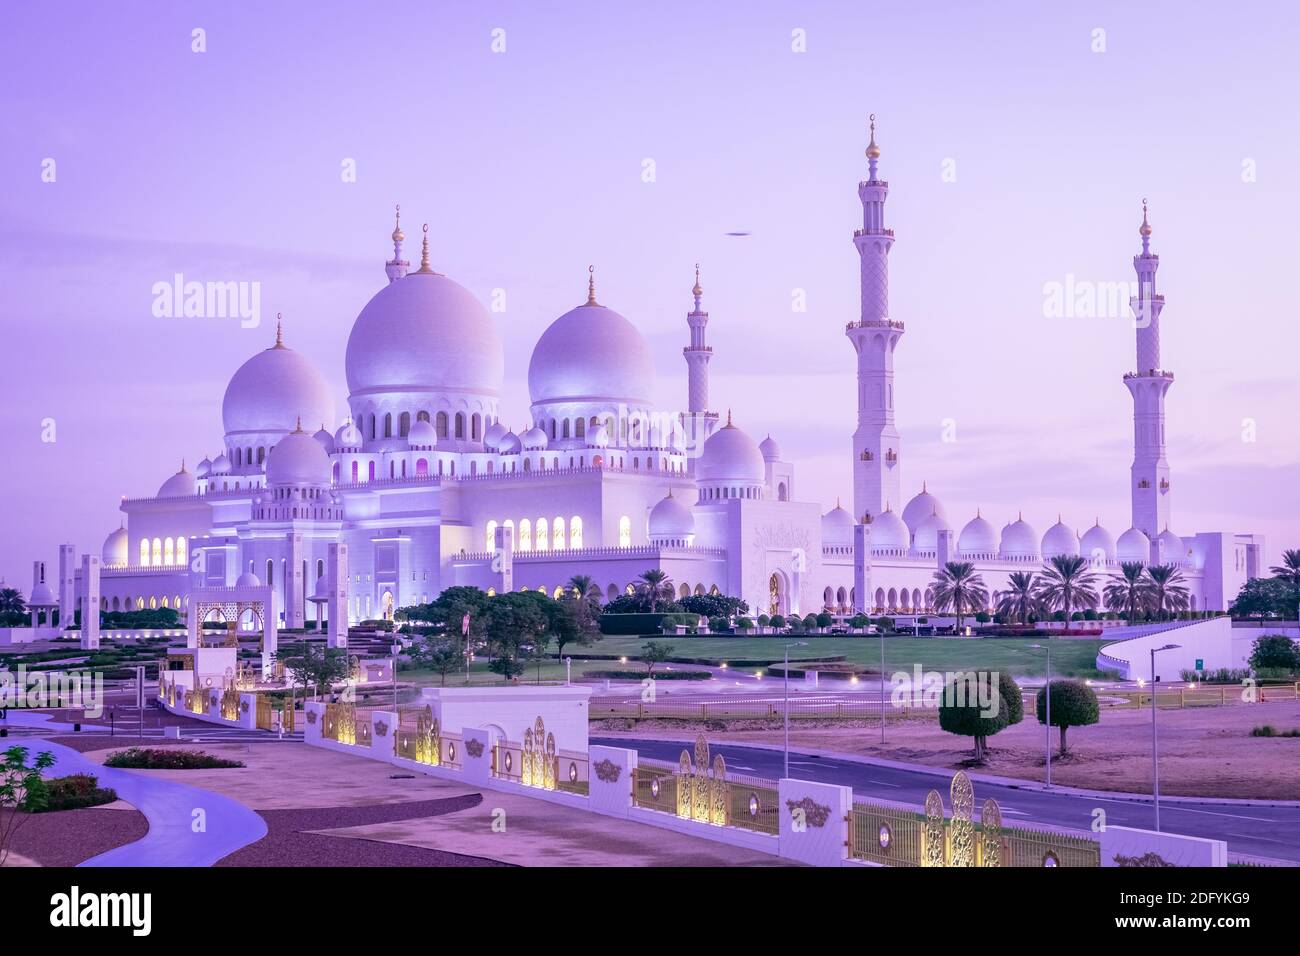 Abu Dhabi sheikh zayed grand mosque, United Arab Emirates Stock Photo